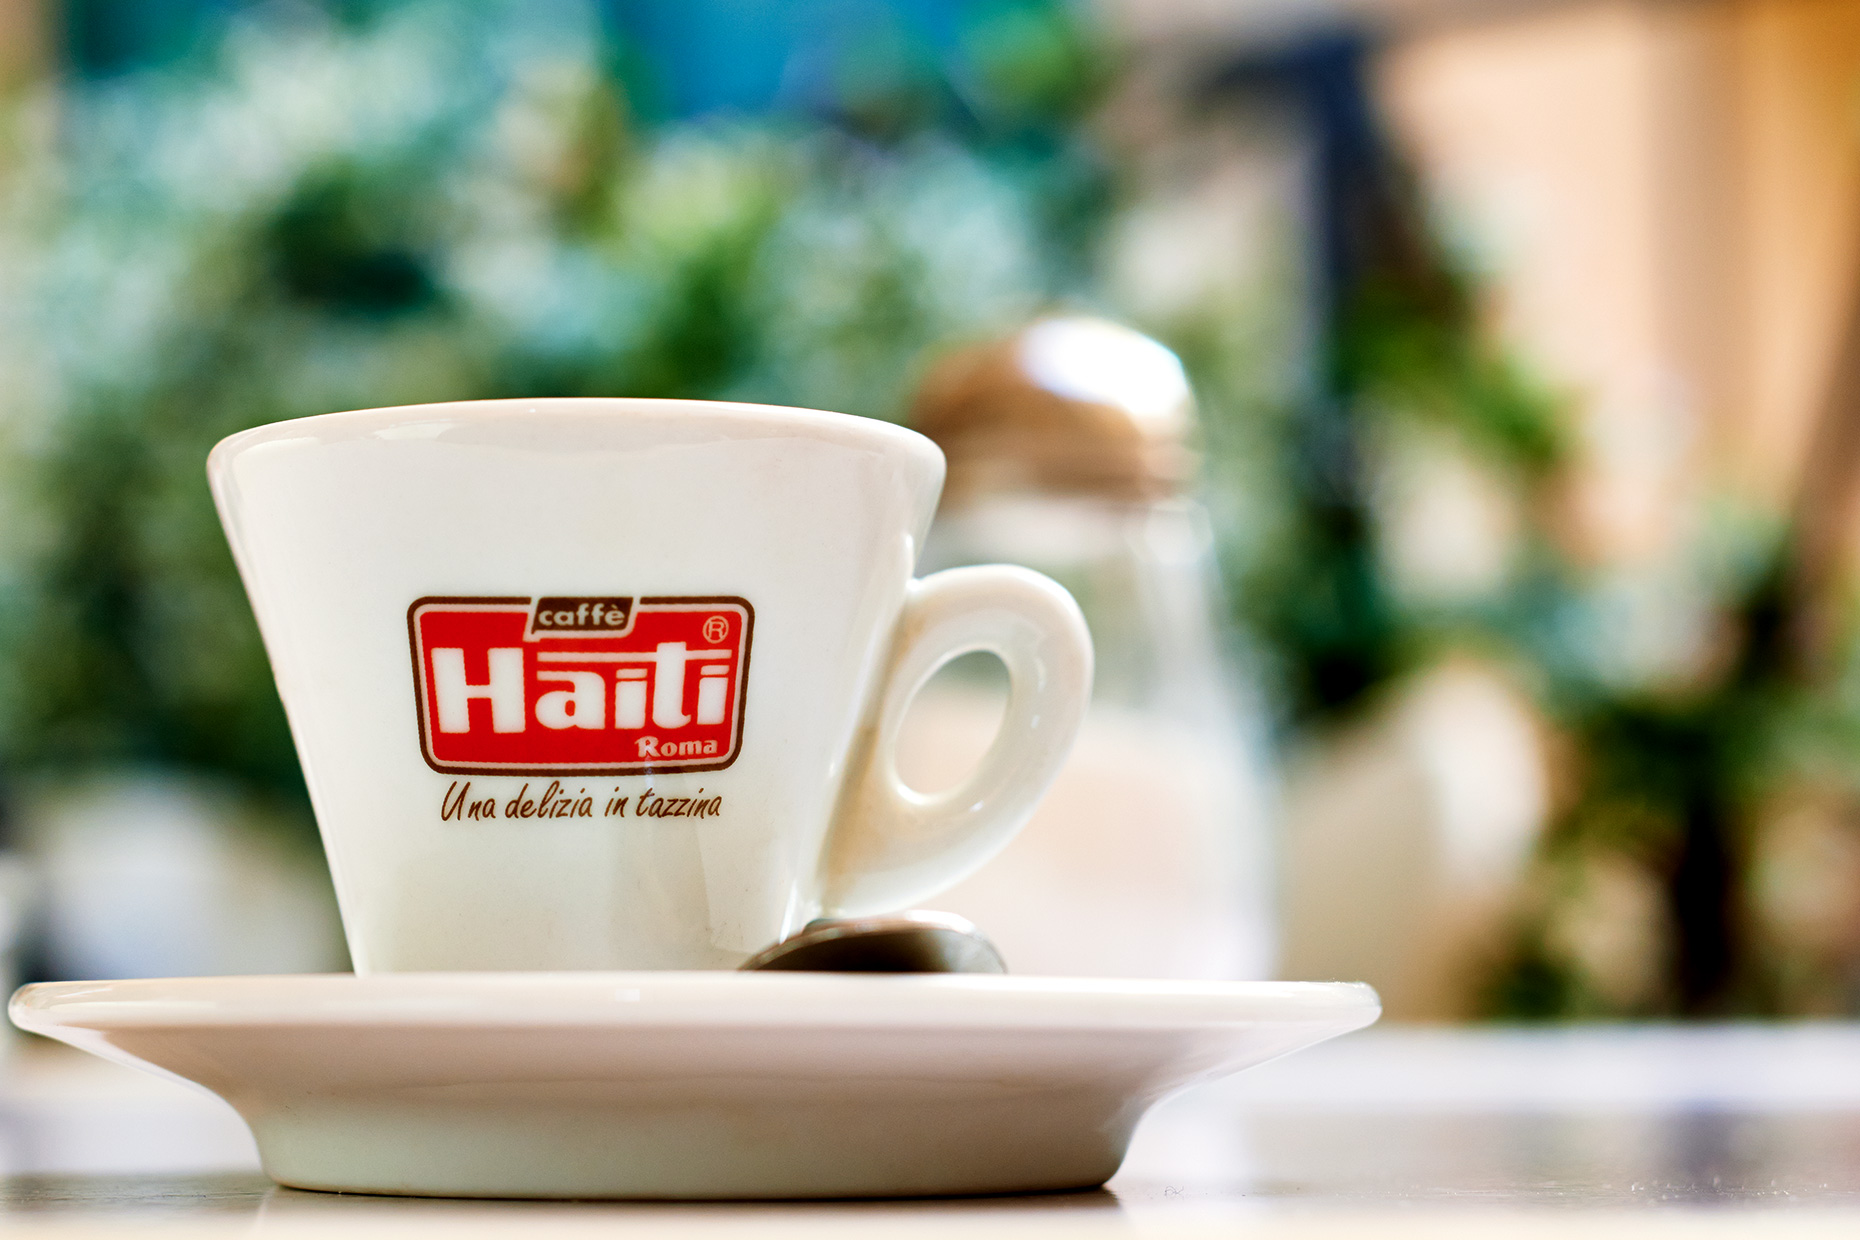 Espresso in Rome, Caffe haiti